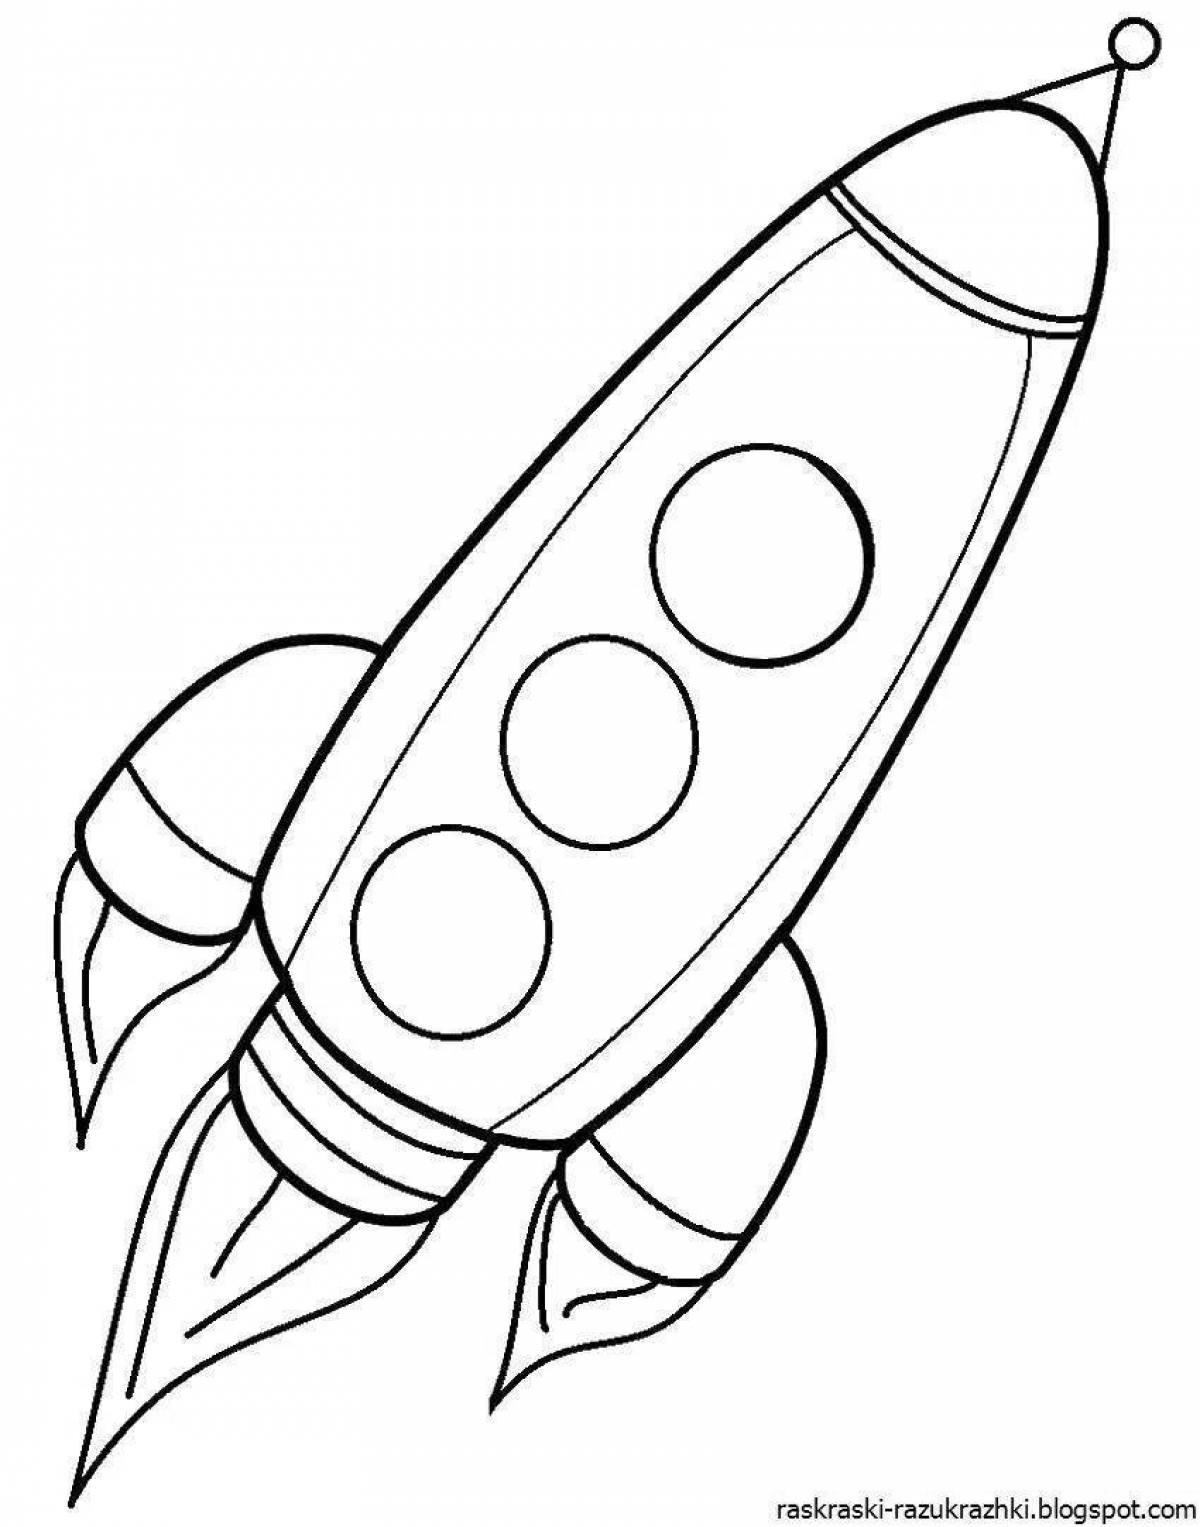 Fantastic rocket coloring book for kids